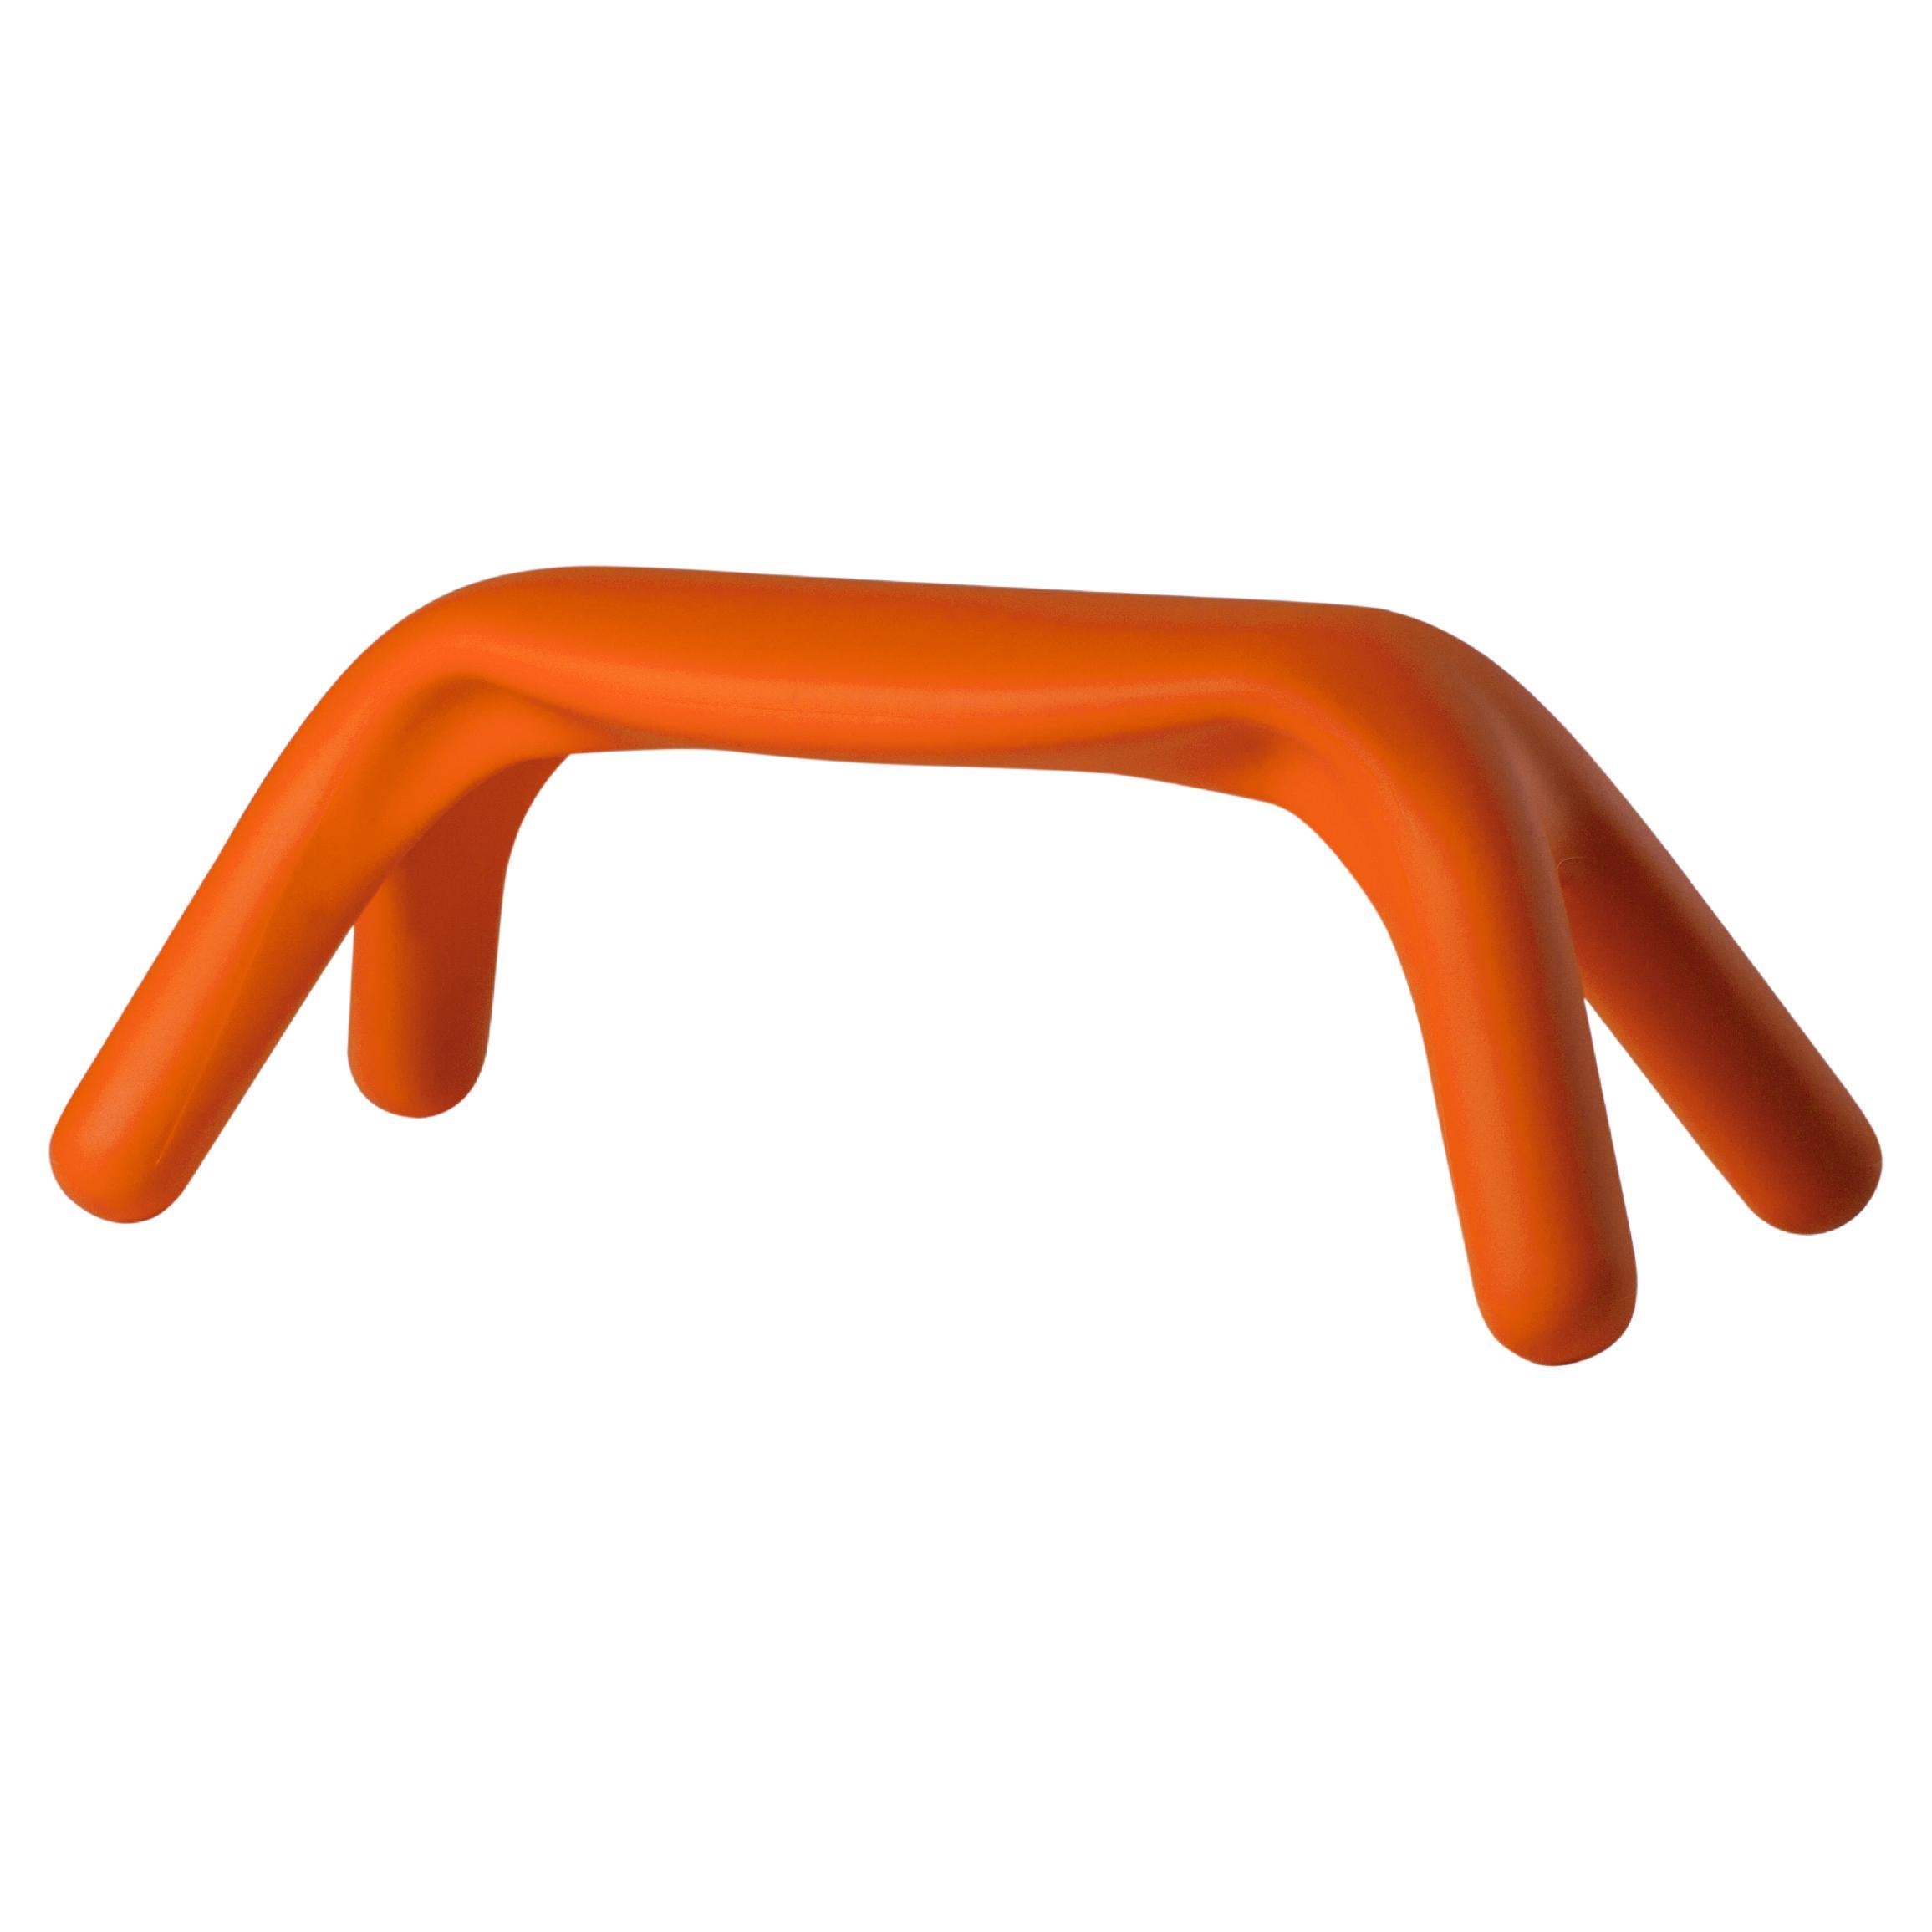 Banc Atlas Slide Design en peau de mouton orange de Giorgio Biscaro